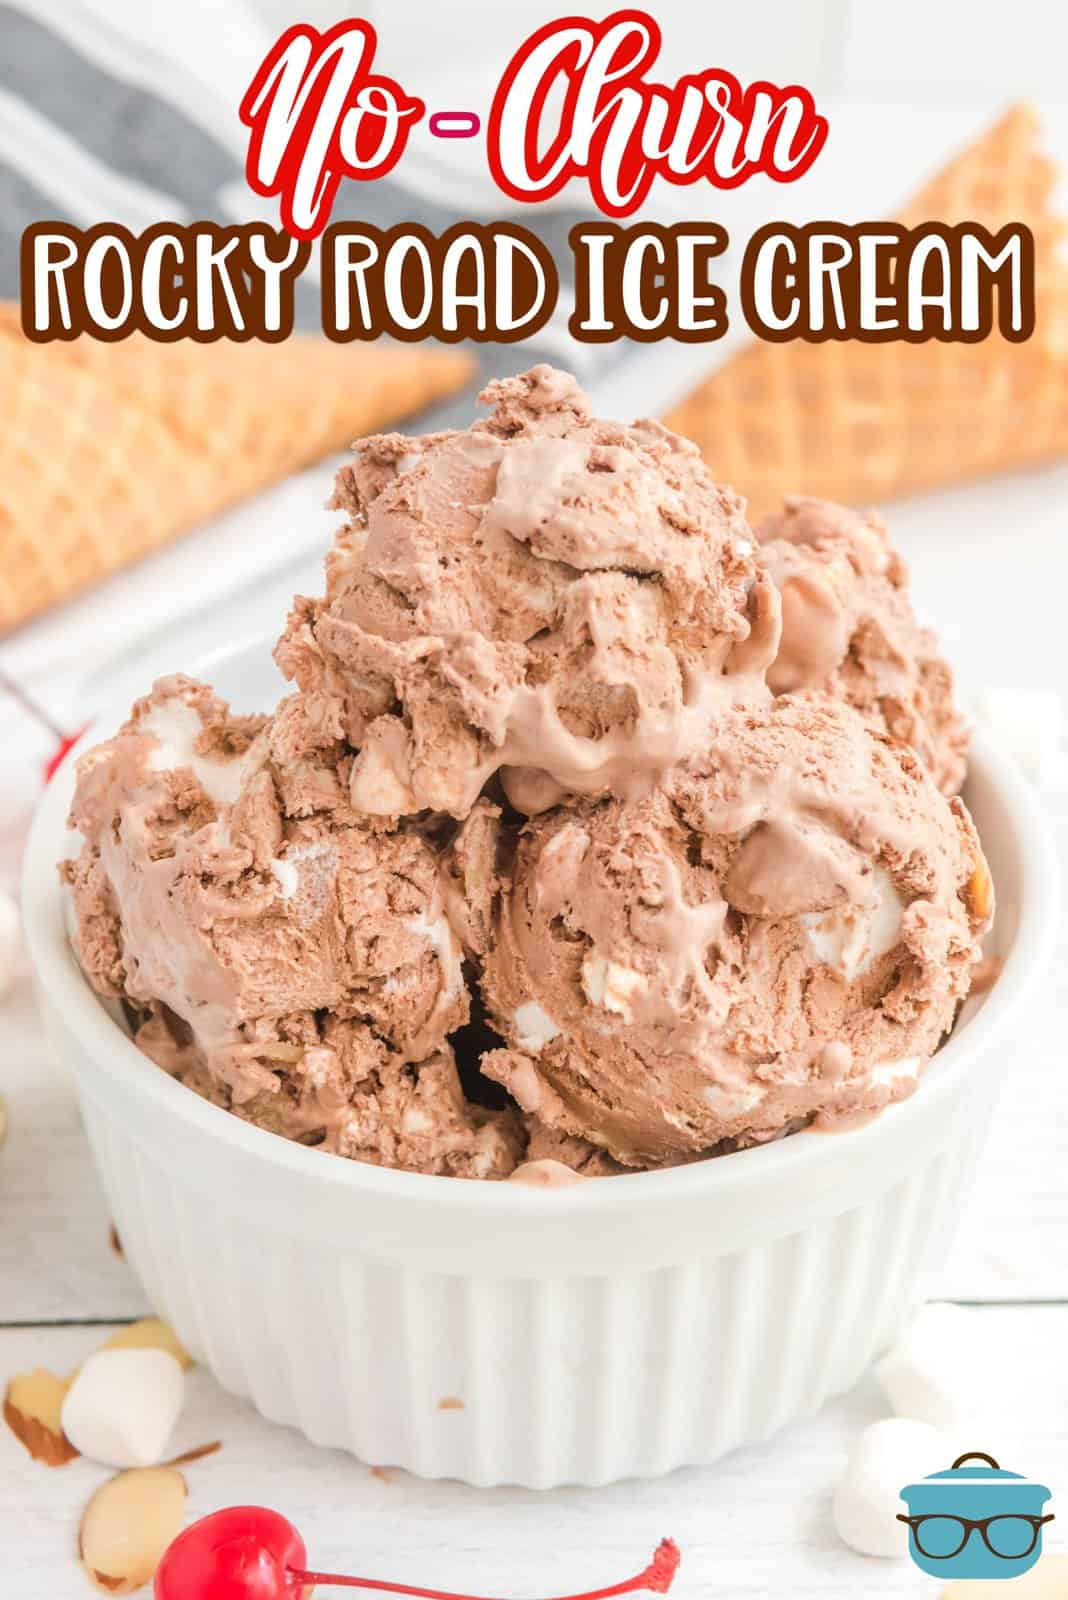 Immagine Pinterest del gelato No-Churn Rocky Road in ramekin bianco con marshmallow e noci intorno alla ciotola.